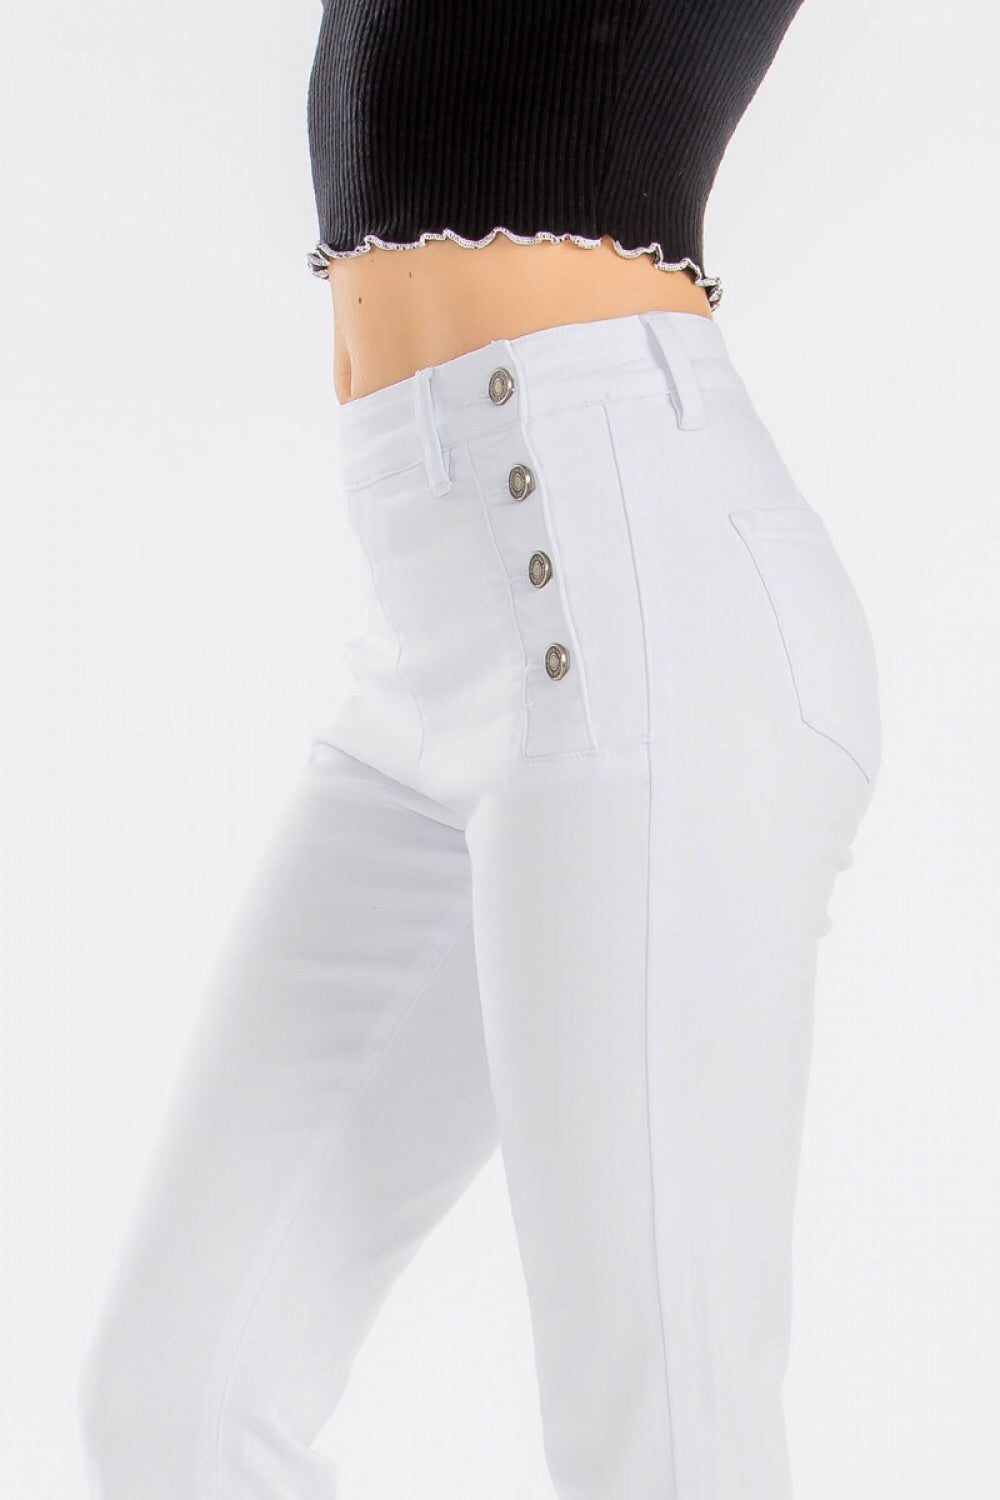 Grace White Trouser Jean